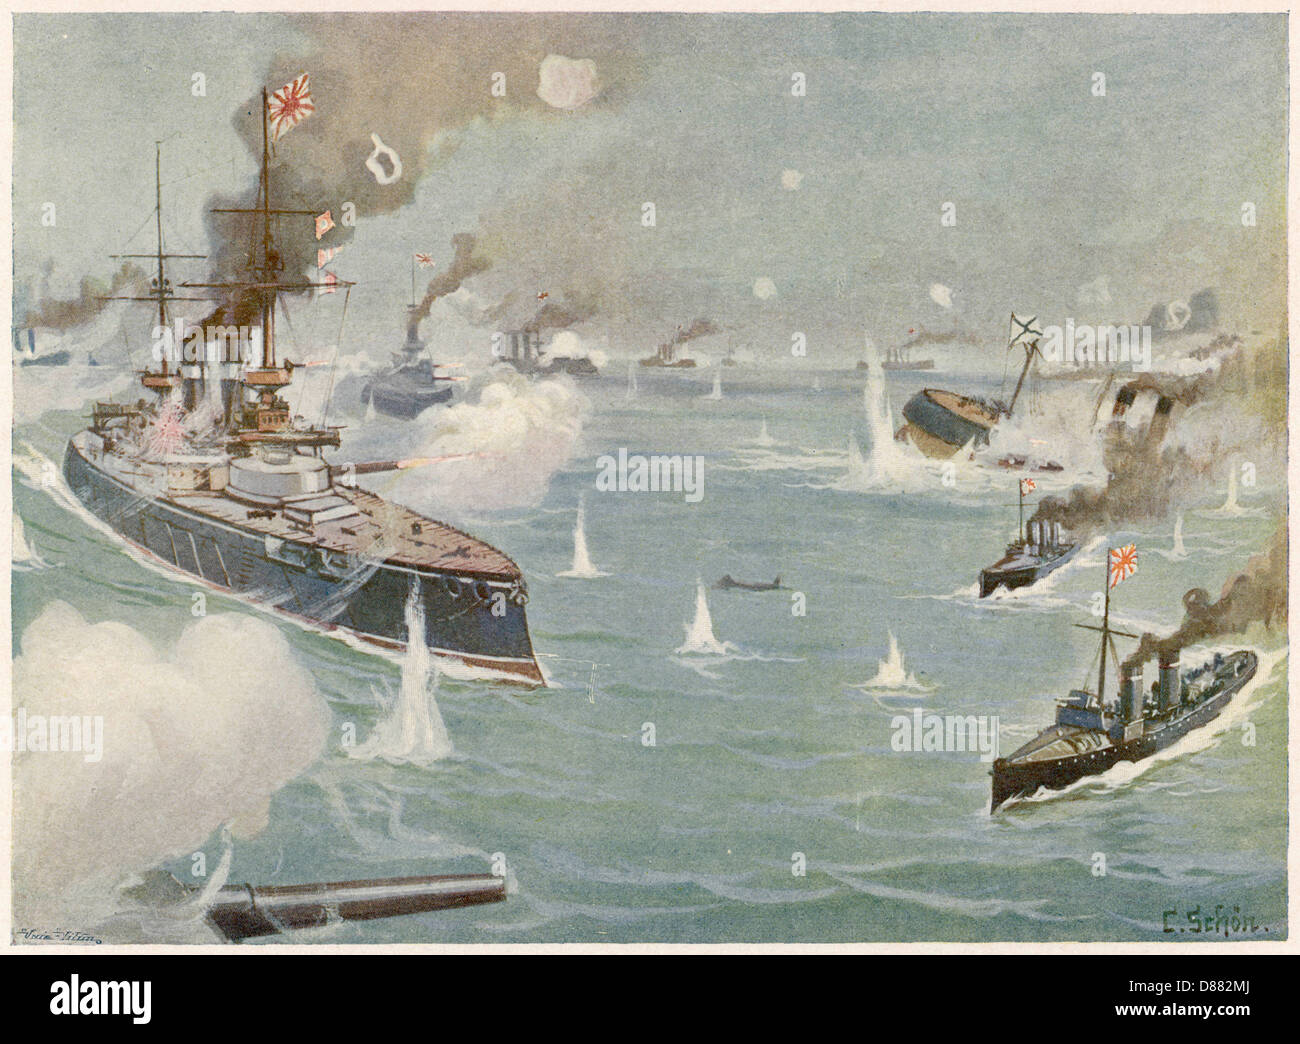 Японская эскадра 1904. Цусима 2 эскадра.